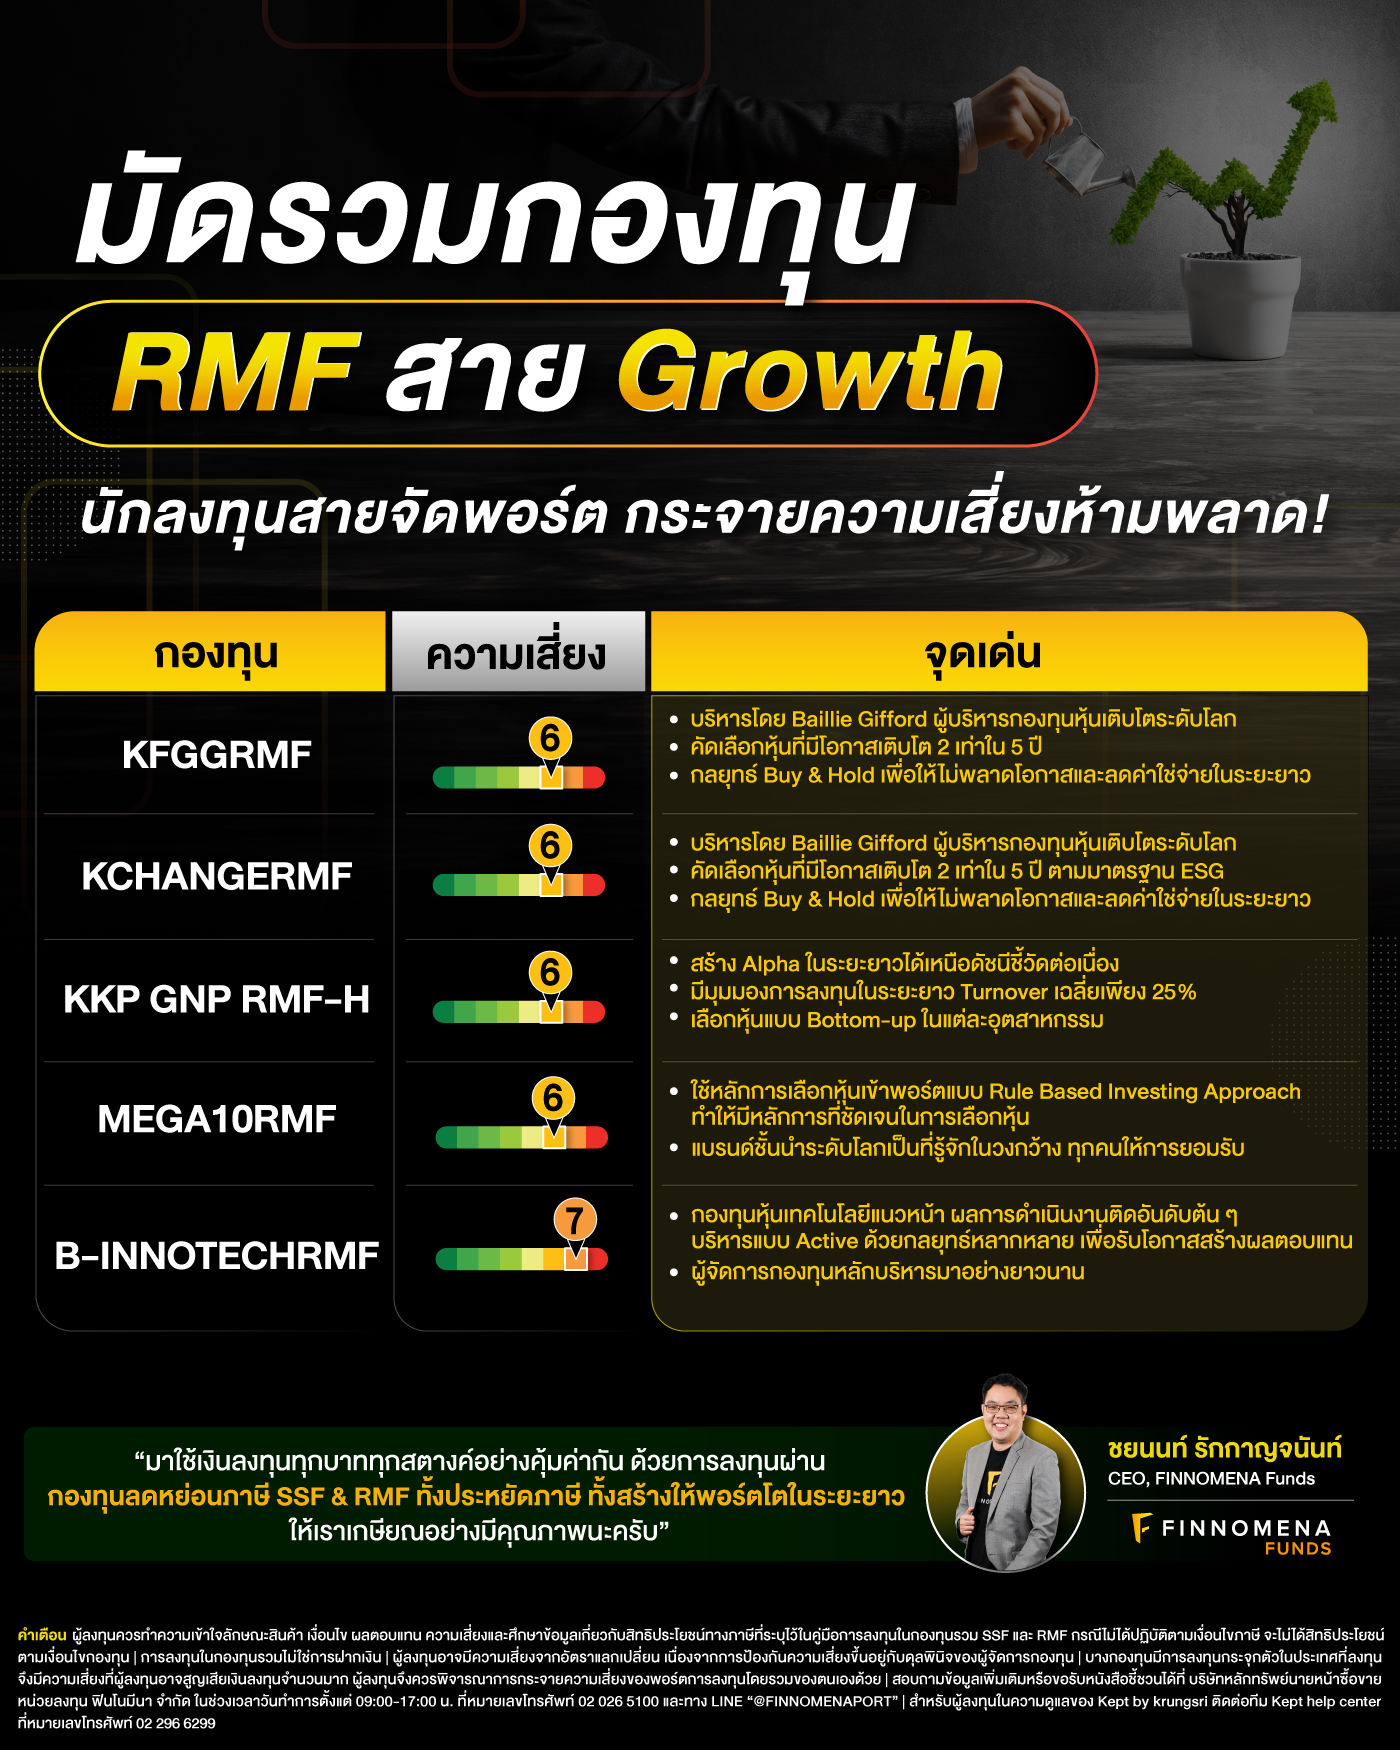 มัดรวมกองทุน SSF & RMF สาย Growth สร้างพอร์ตให้เติบโตระยะยาว